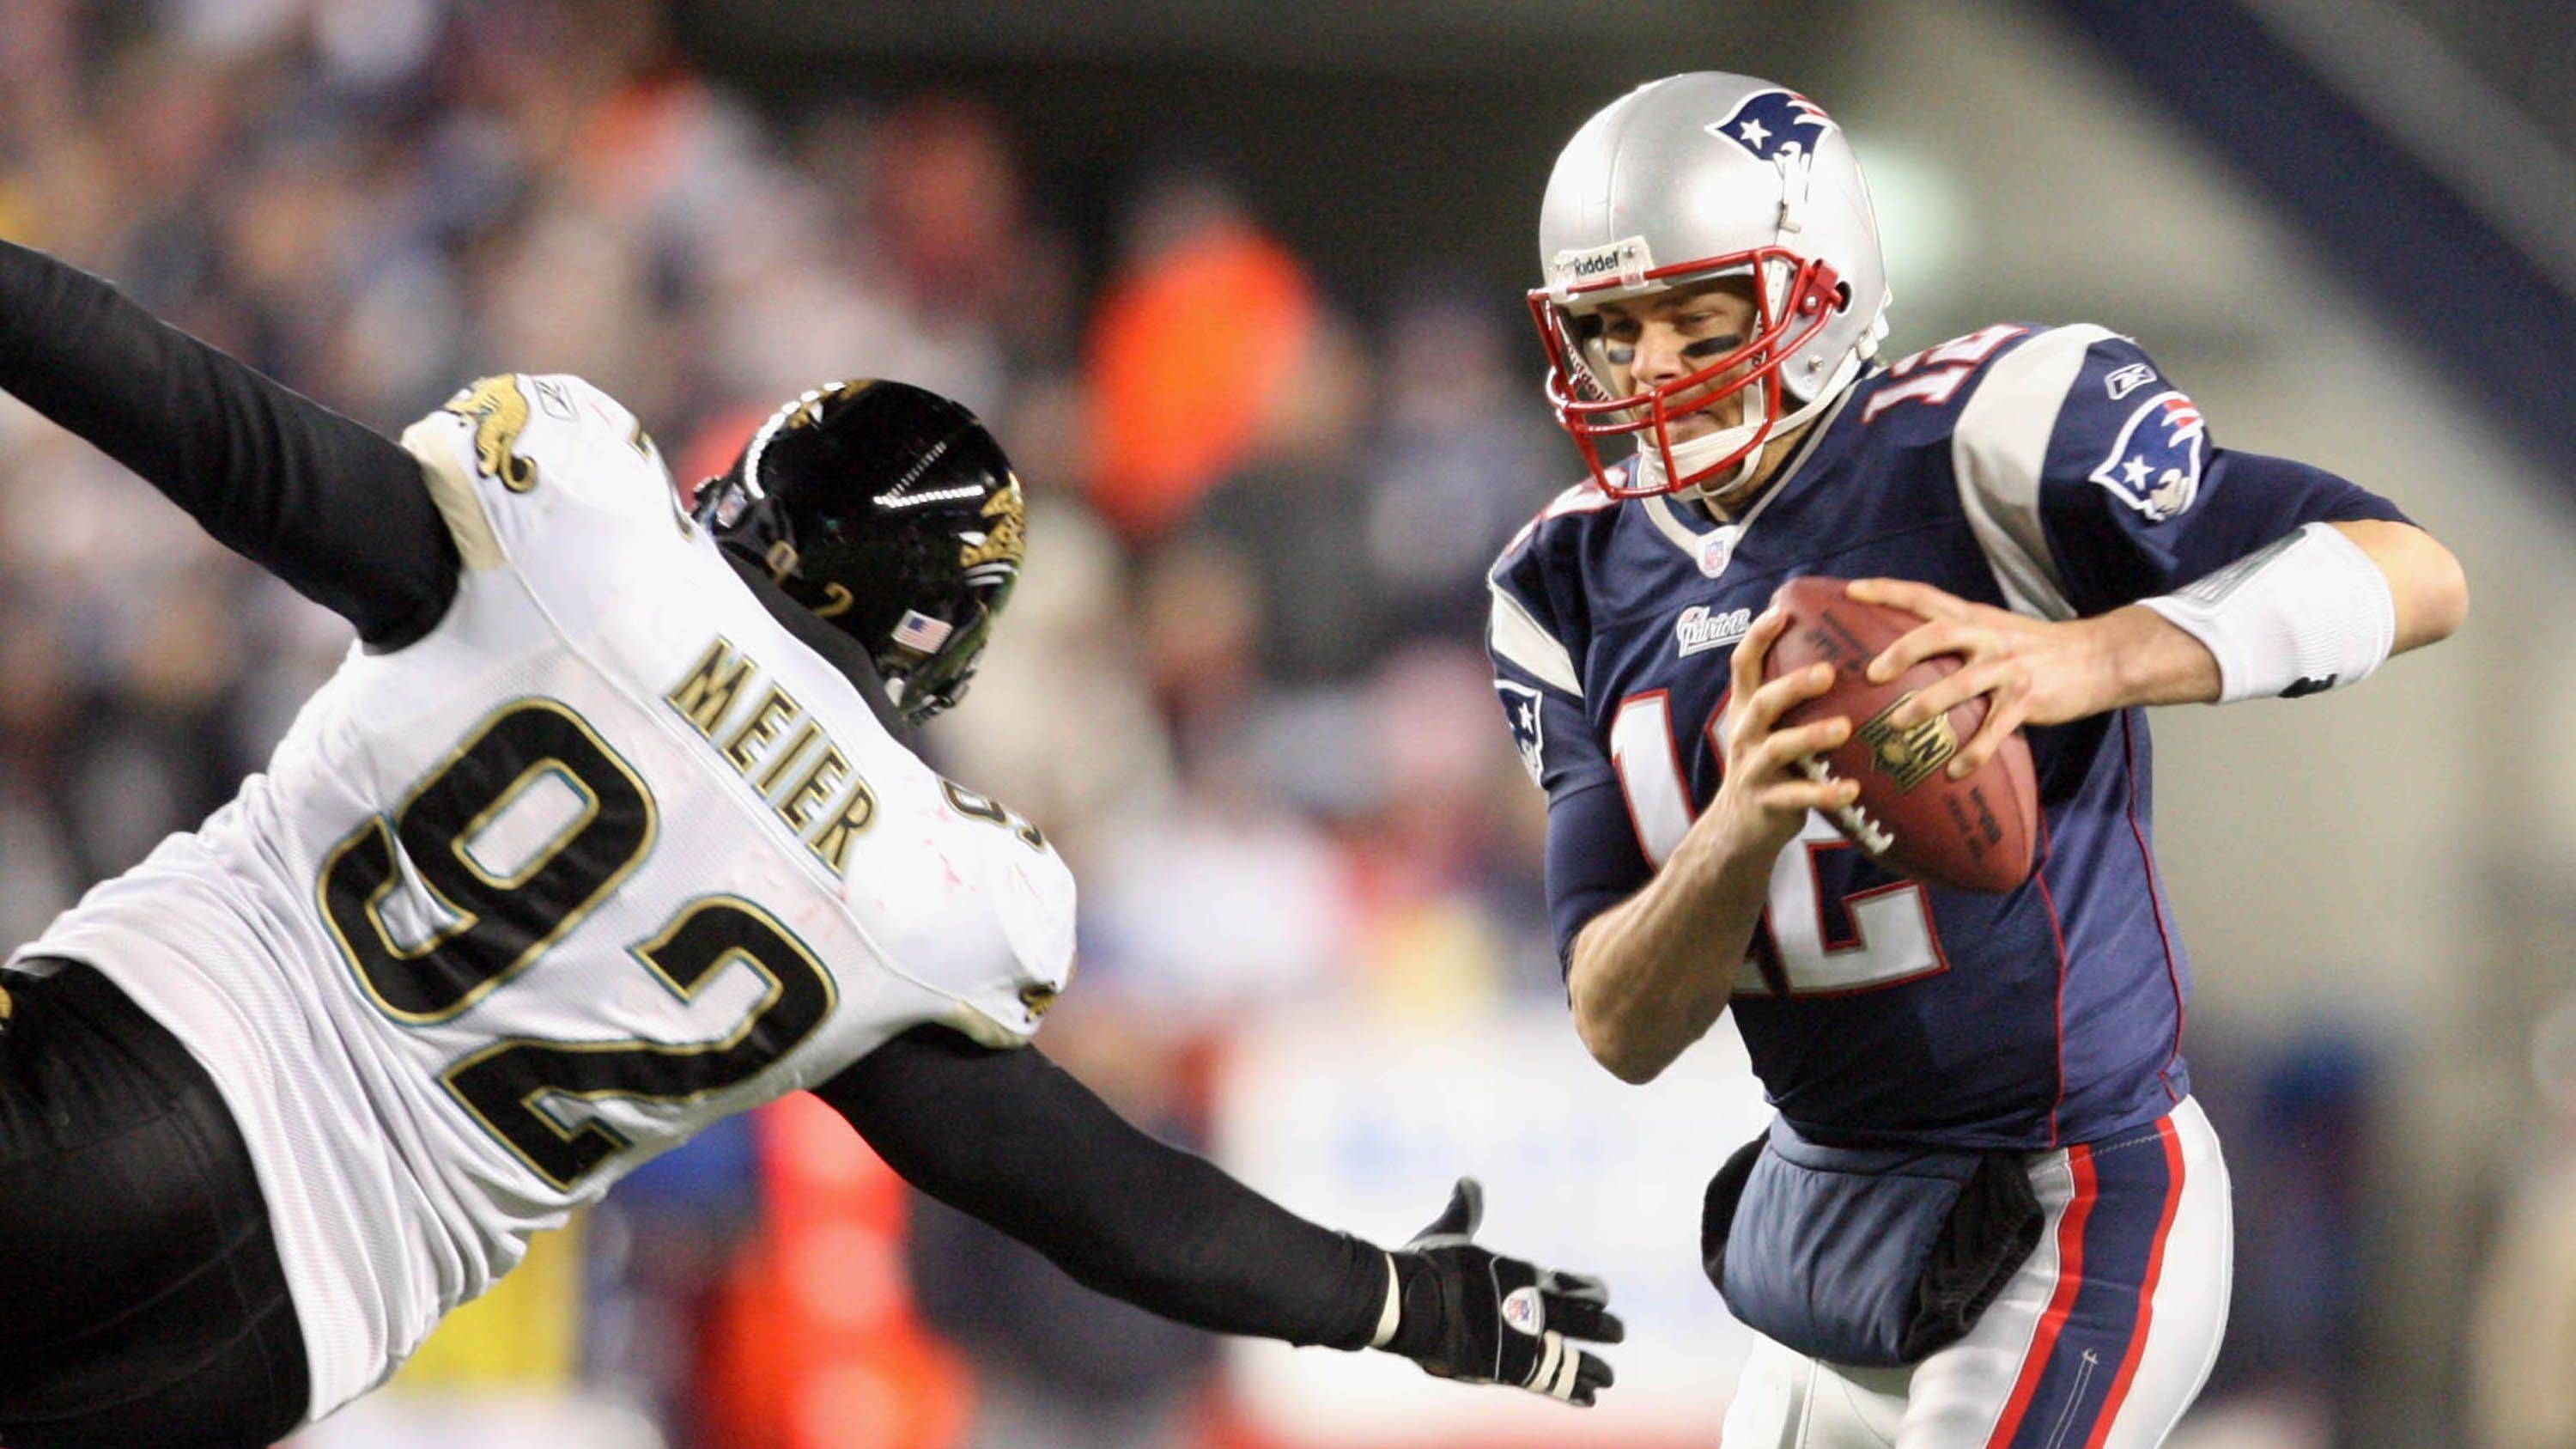 <strong>1. Tom Brady<br></strong>Vielleicht der größte Draft-Steal aller Zeiten. Als 199. Pick der 6. Runde im Jahr 2000 von den New England Patriots ausgewählt, wurde Brady zu einem der erfolgreichsten Quarterbacks der NFL-Geschichte mit sieben Super Bowl-Siegen.